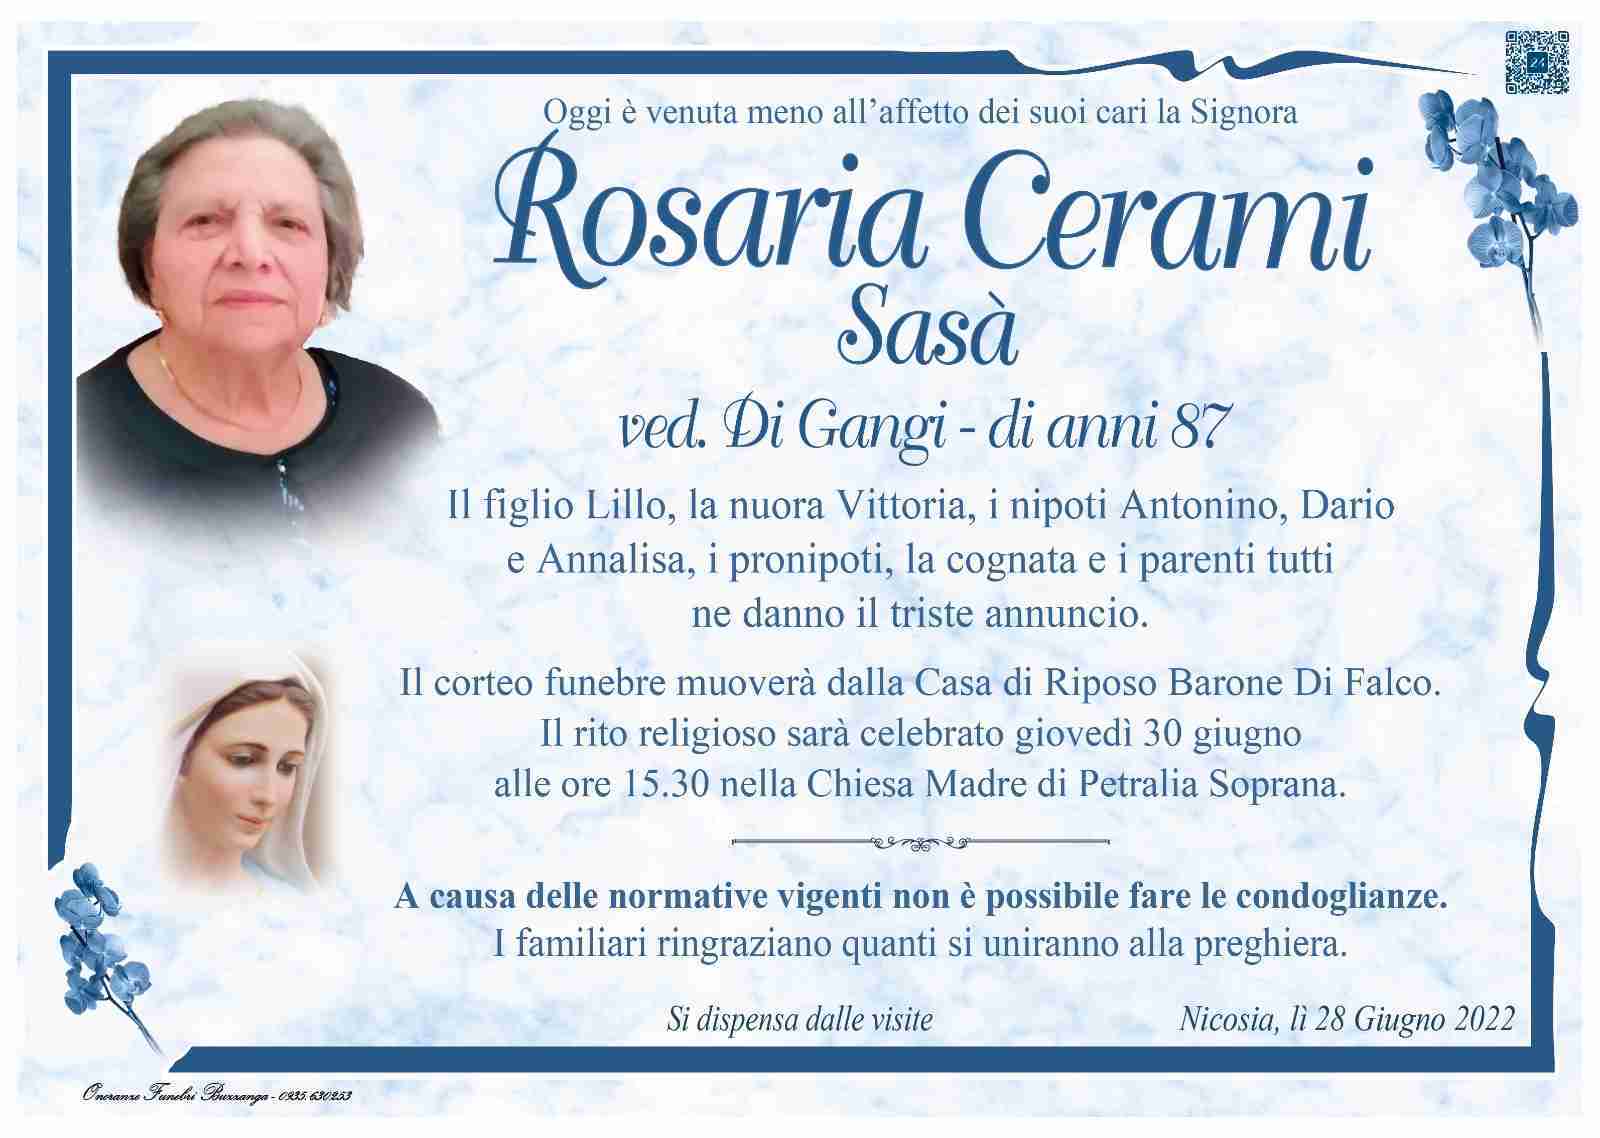 Rosaria Cerami